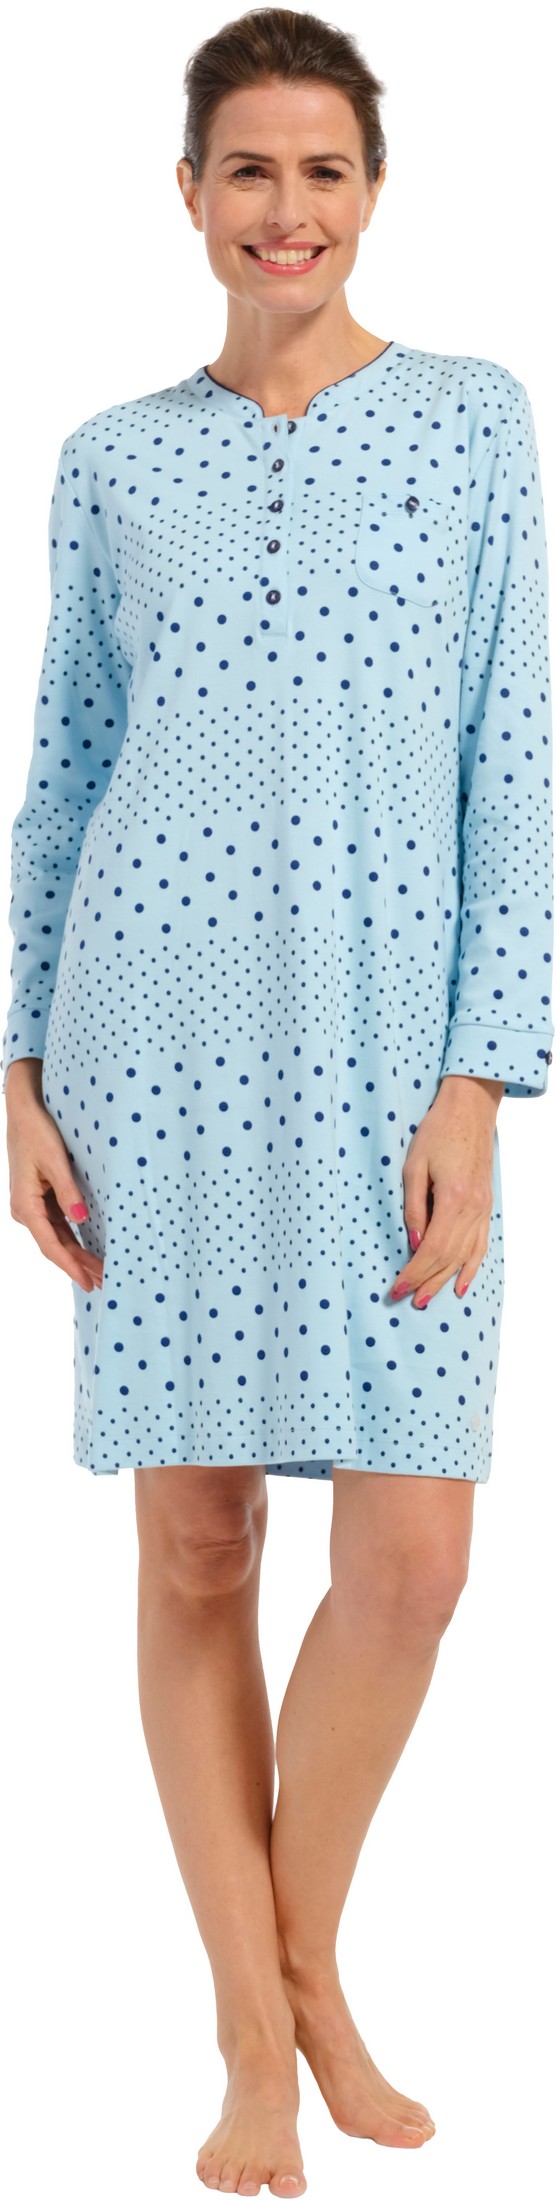 Pastunette dames nachthemd 10232-162-4 - Blauw - 50